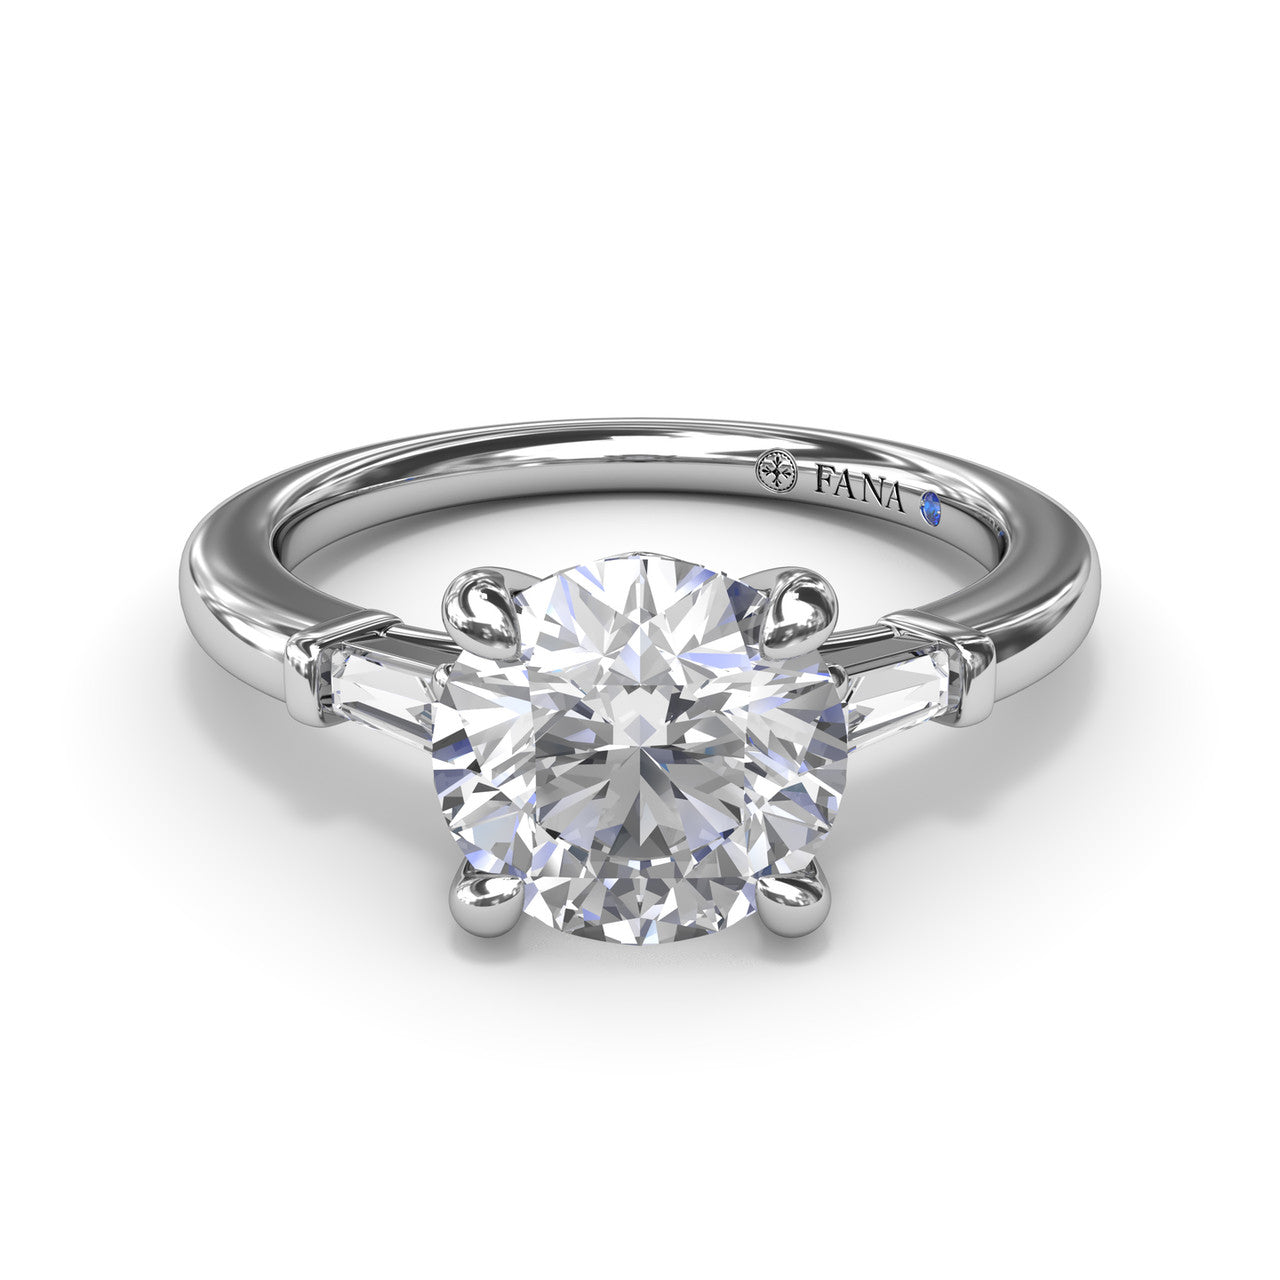 FANA 14 KT White Gold 3 Stone Baguette Diamond Engagement Ring S4070/WG